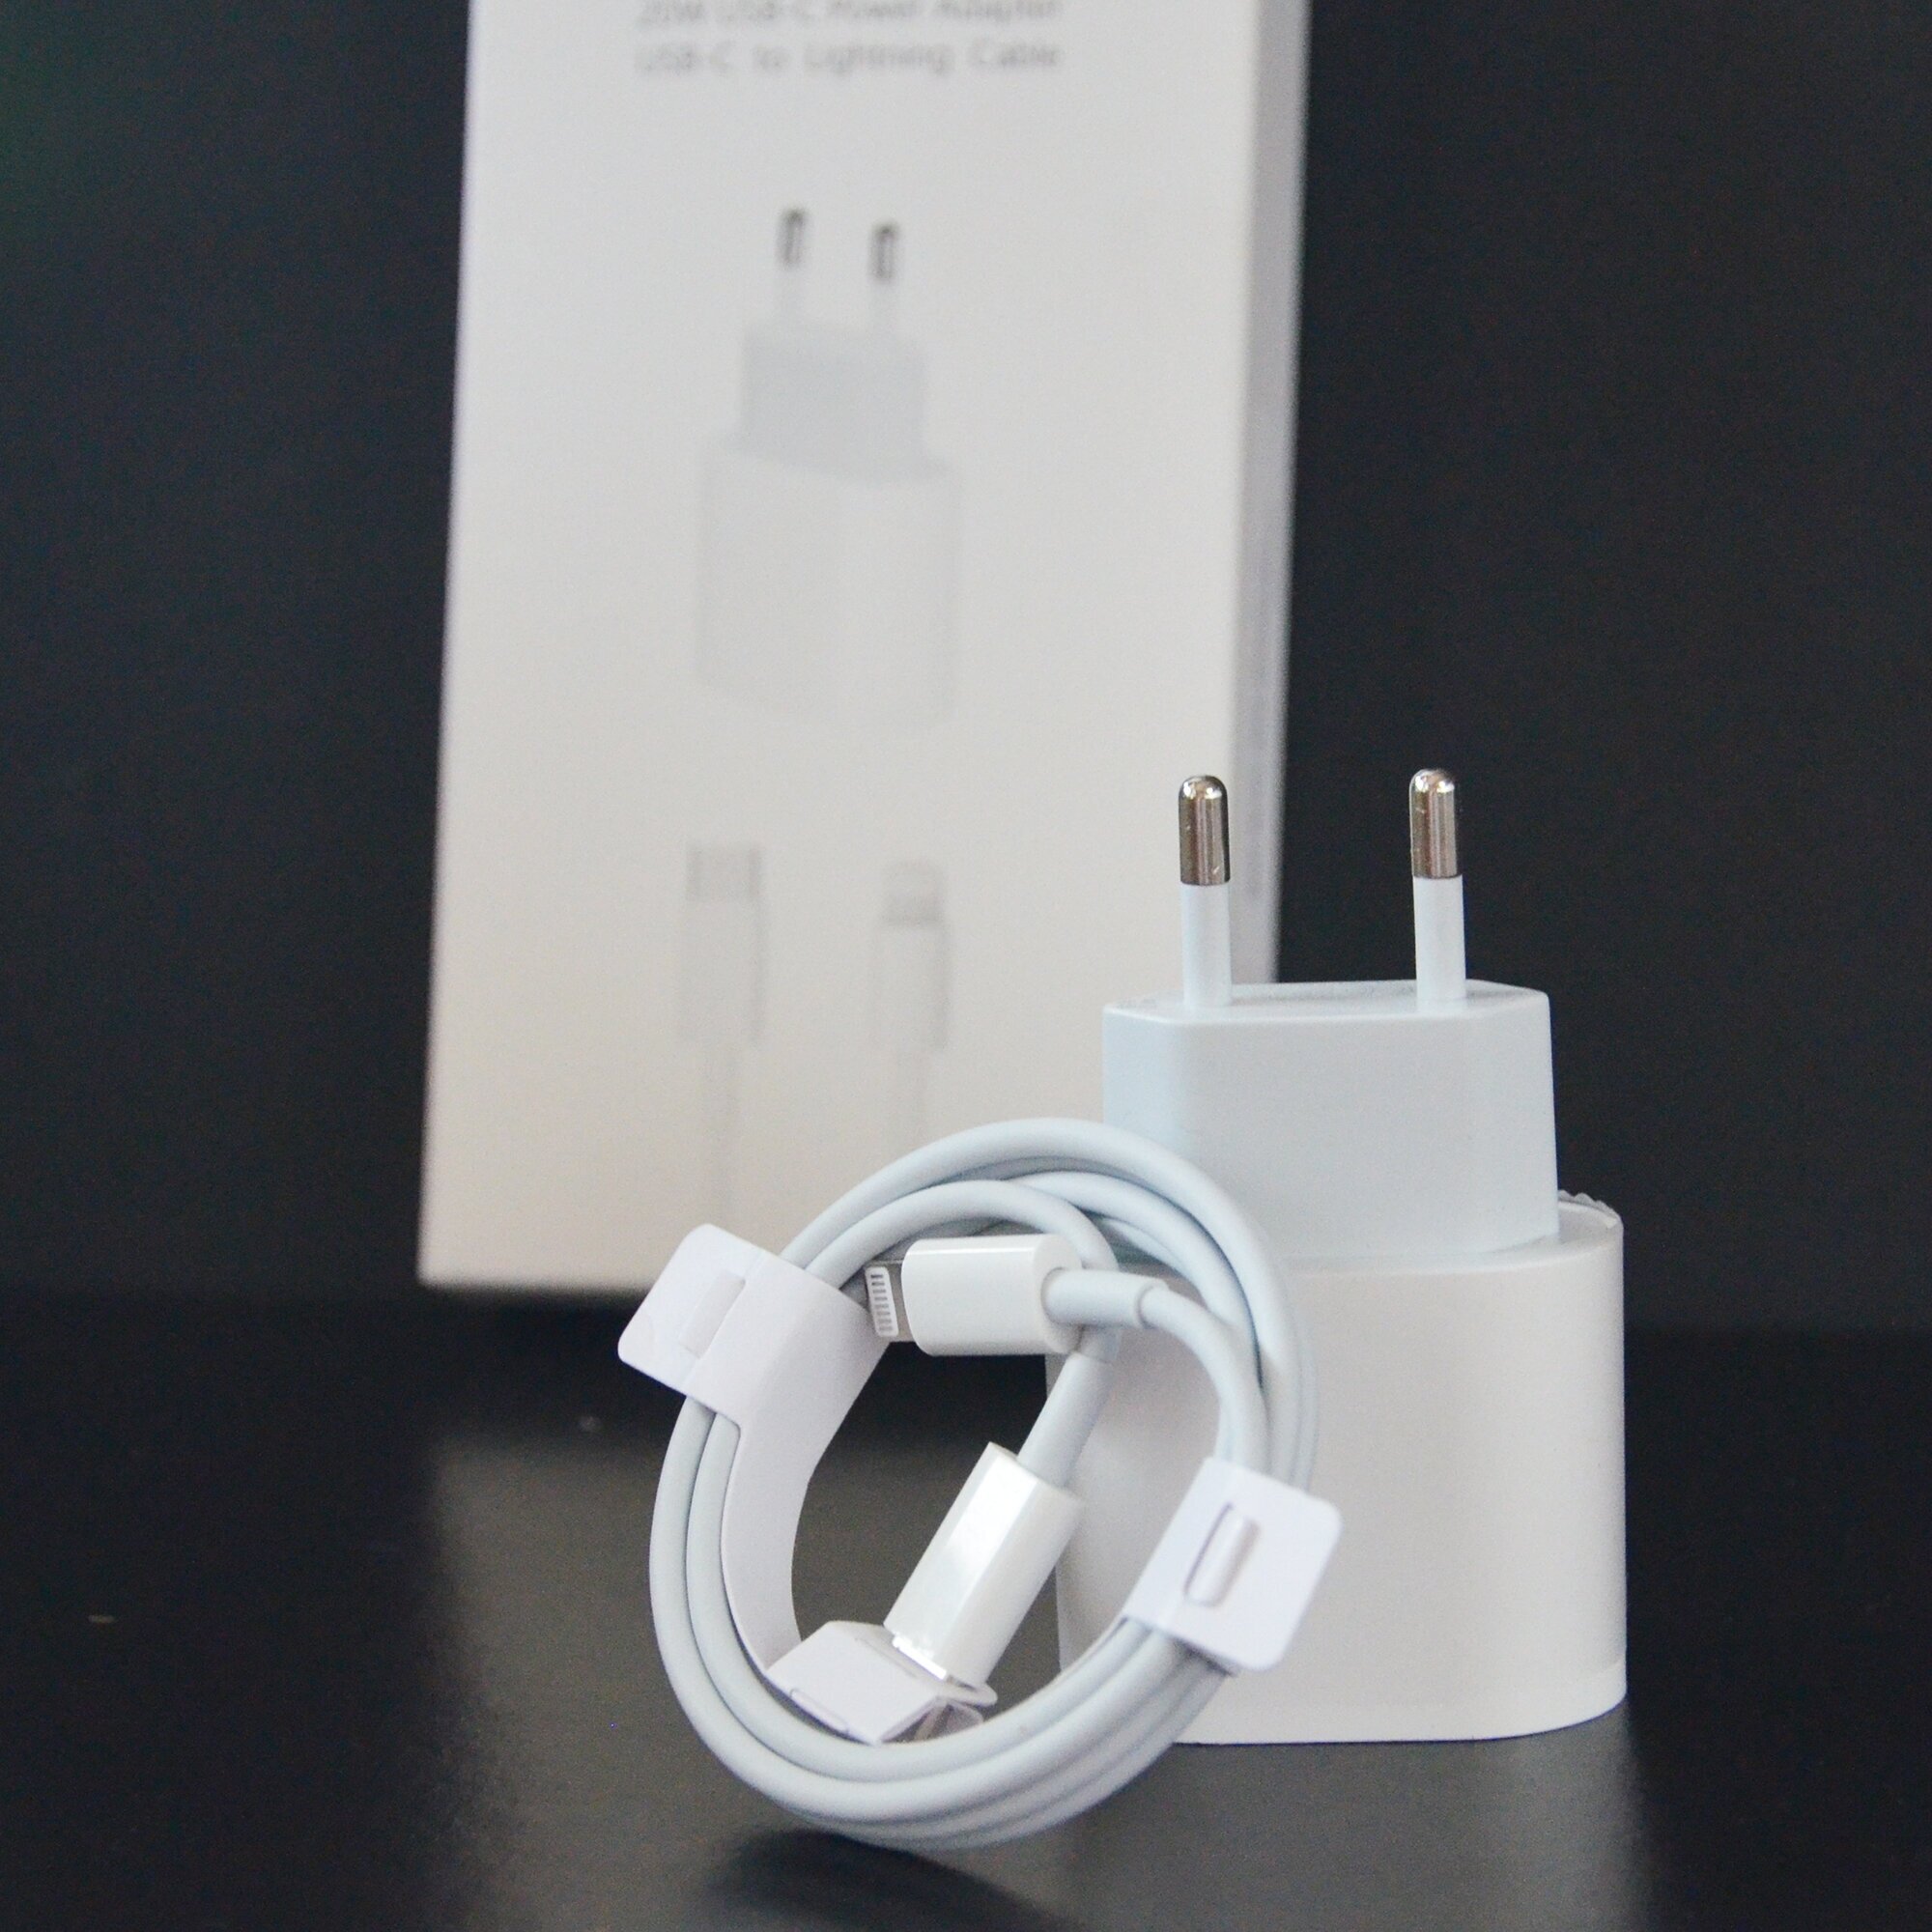 Комплект быстрой зарядки для iphone: блок 20W и кабель Lightning, 1 метр, зарядное устройство для айфон